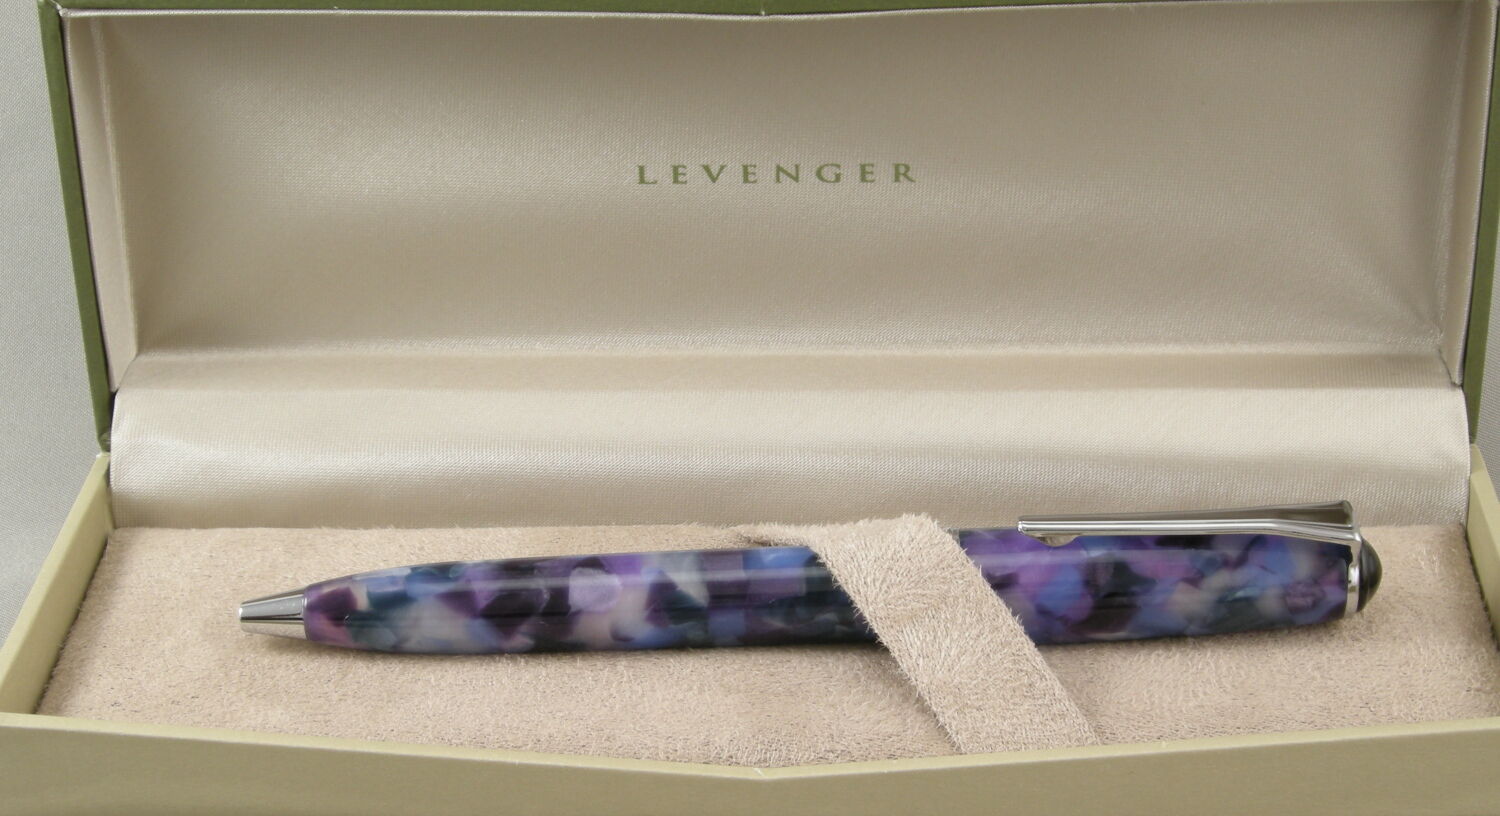 Levenger True Writer Ultra Violet Purple & Chrome Ballpoint Pen - New In Box